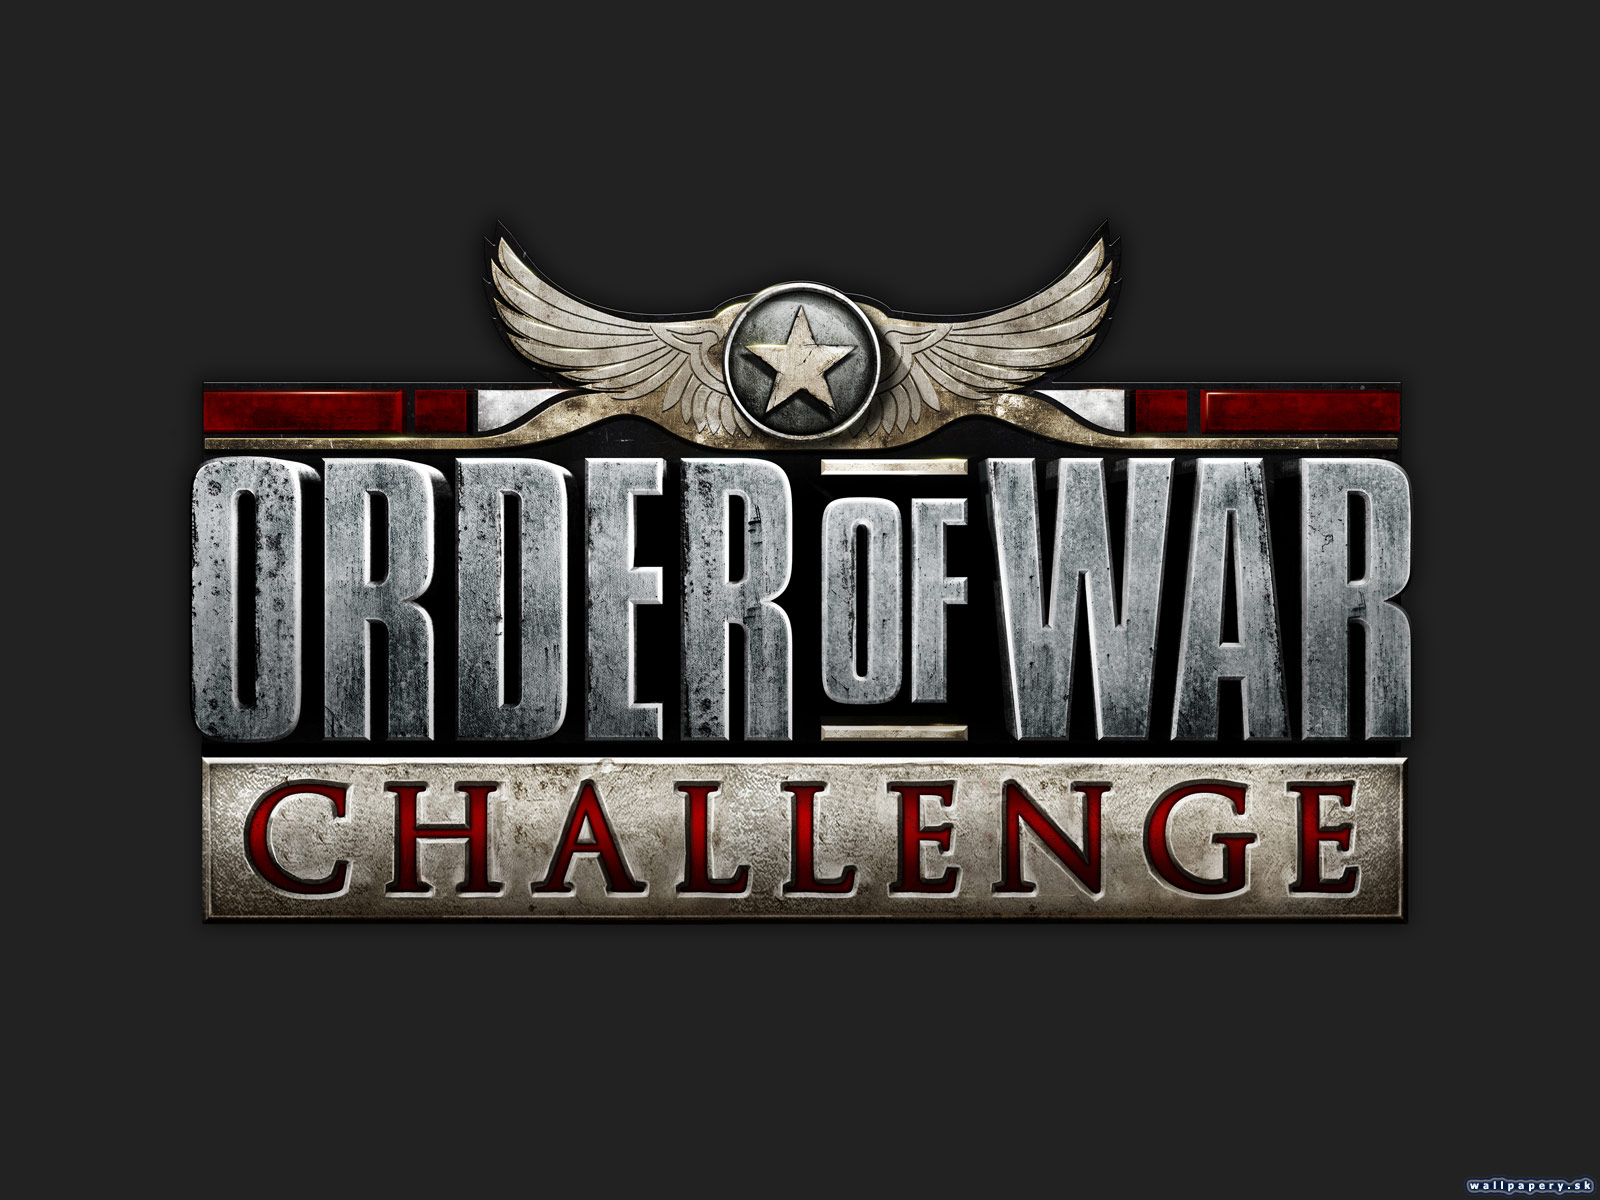 Order of War: Challenge - wallpaper 4